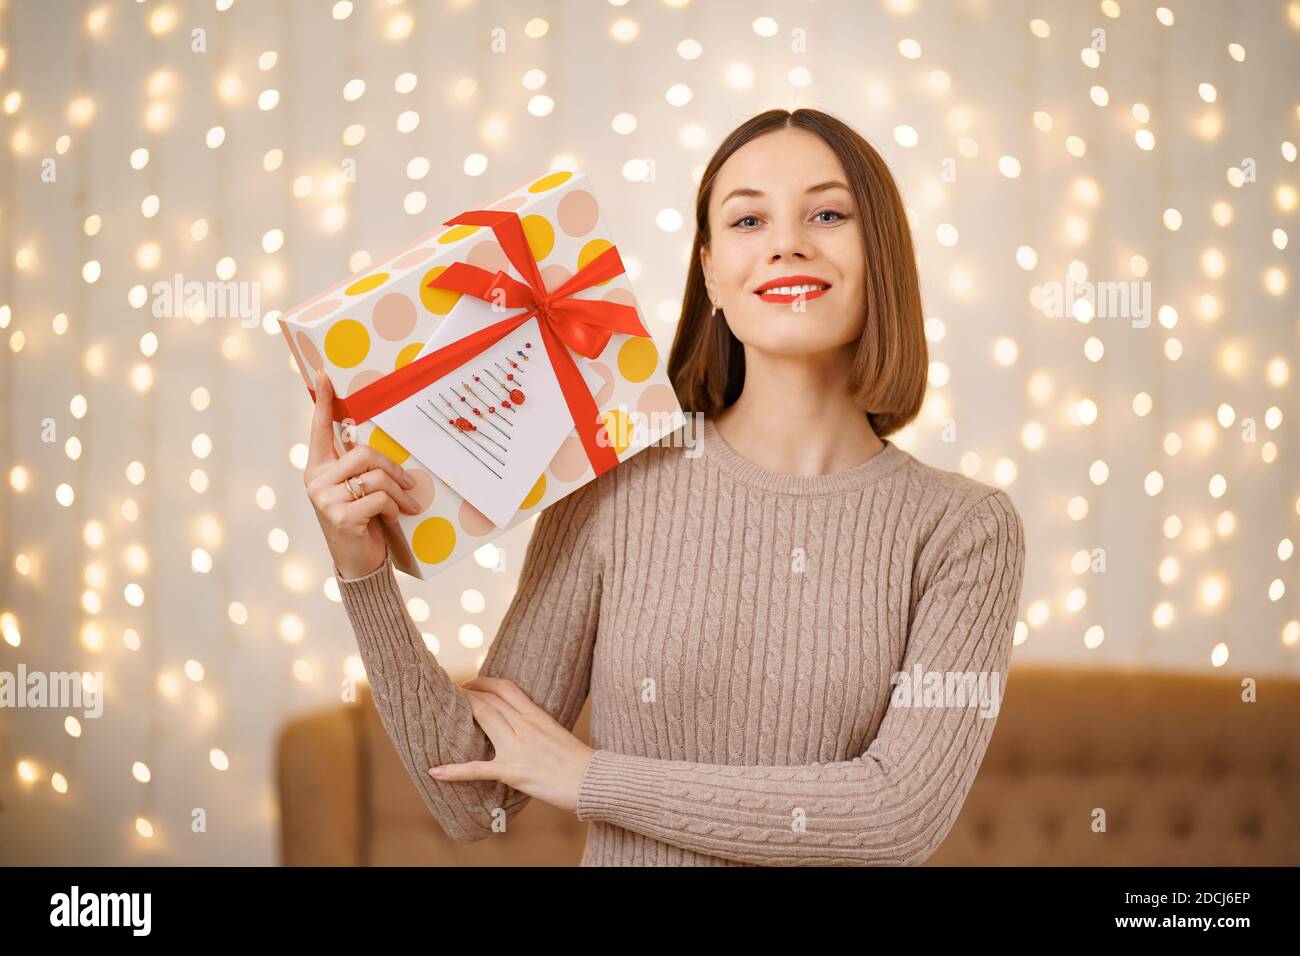 Portrait d'une jeune femme heureuse lèvres rouges tenant une boîte cadeau emballée. Gros plan la femme satisfaite a reçu la boîte actuelle. Arrière-plan des lumières de Noël festives. Banque D'Images